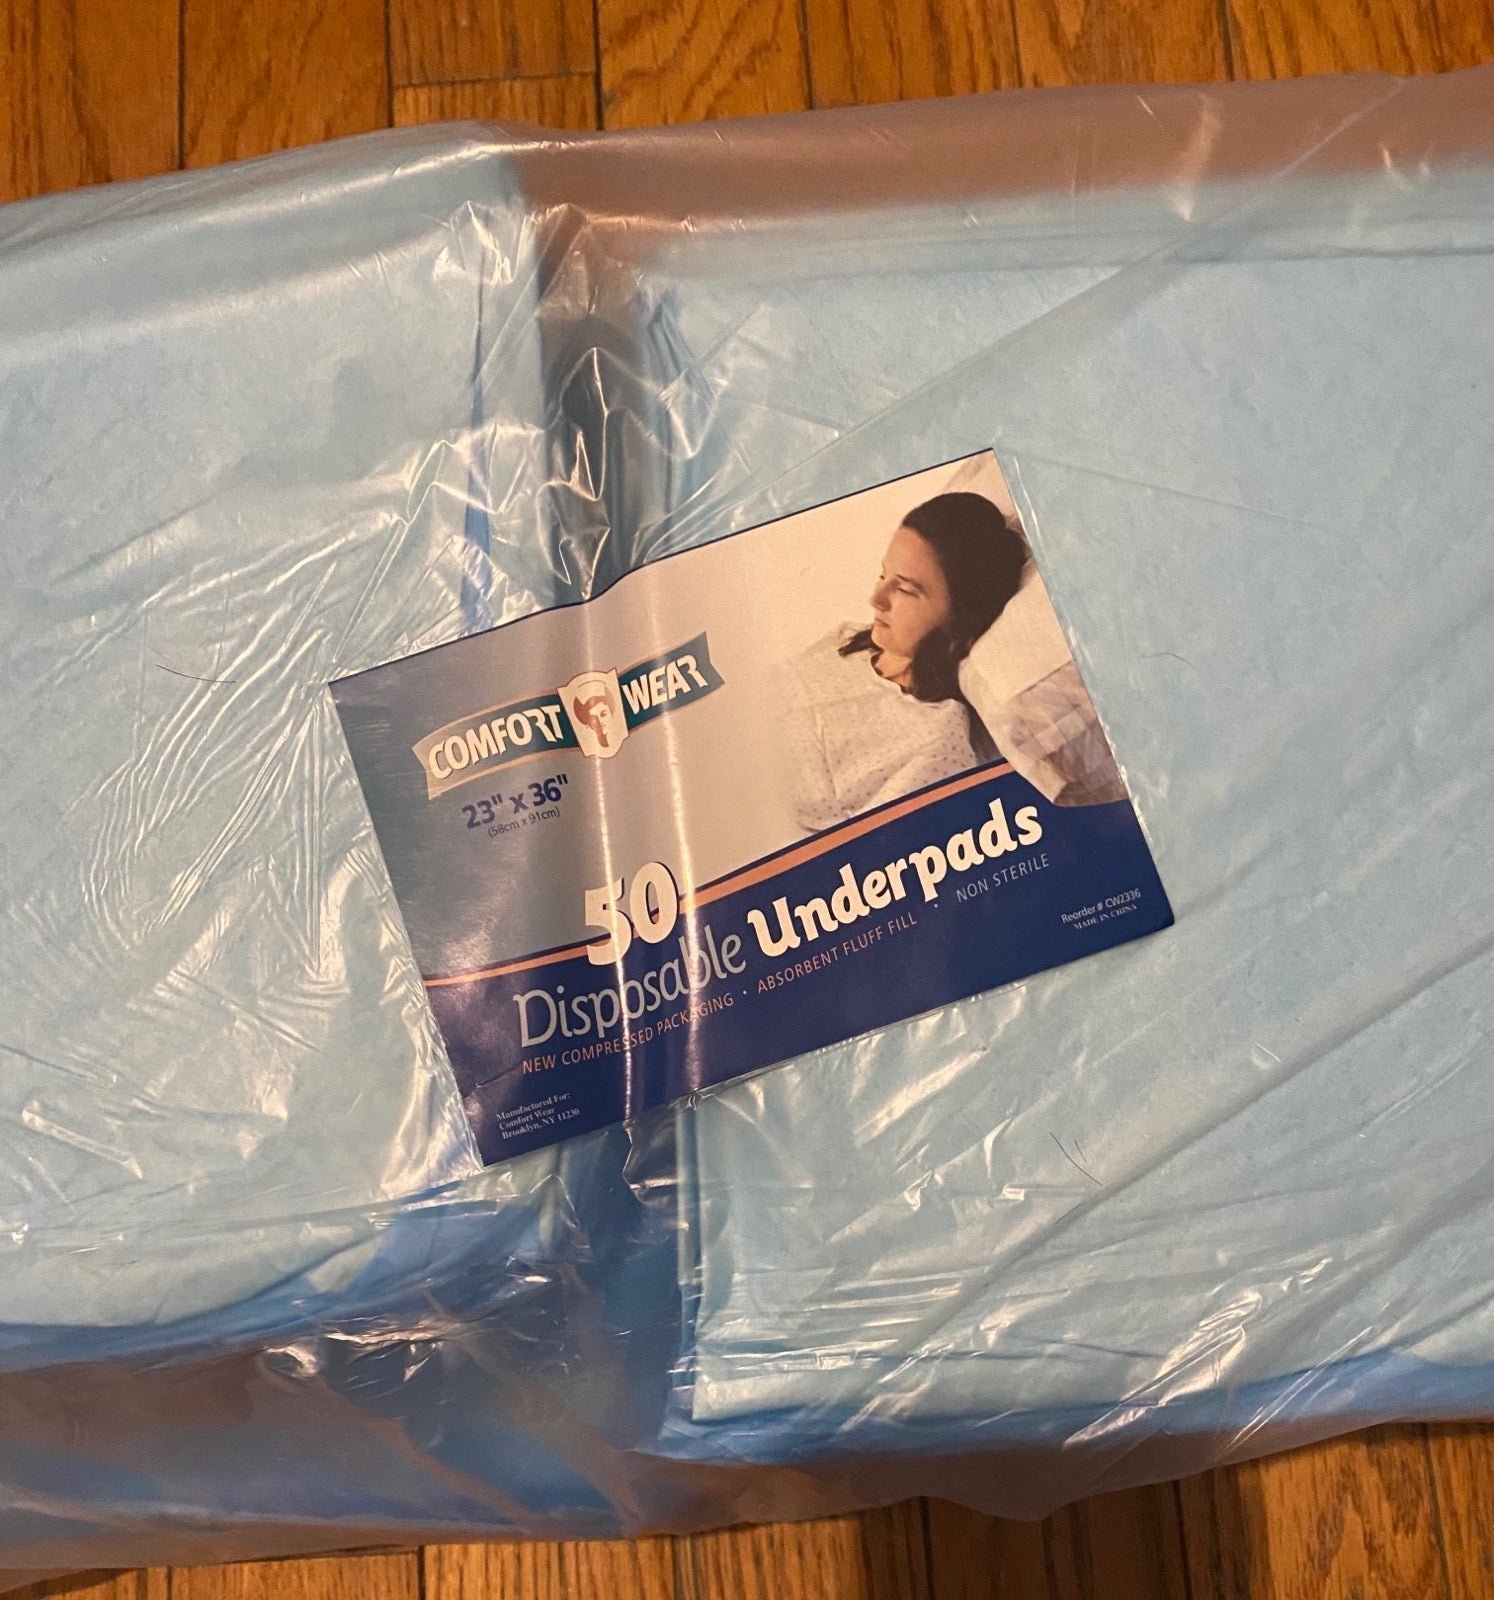 BUNDLE: Disposable underpads / Bed pads CiGms0n7l